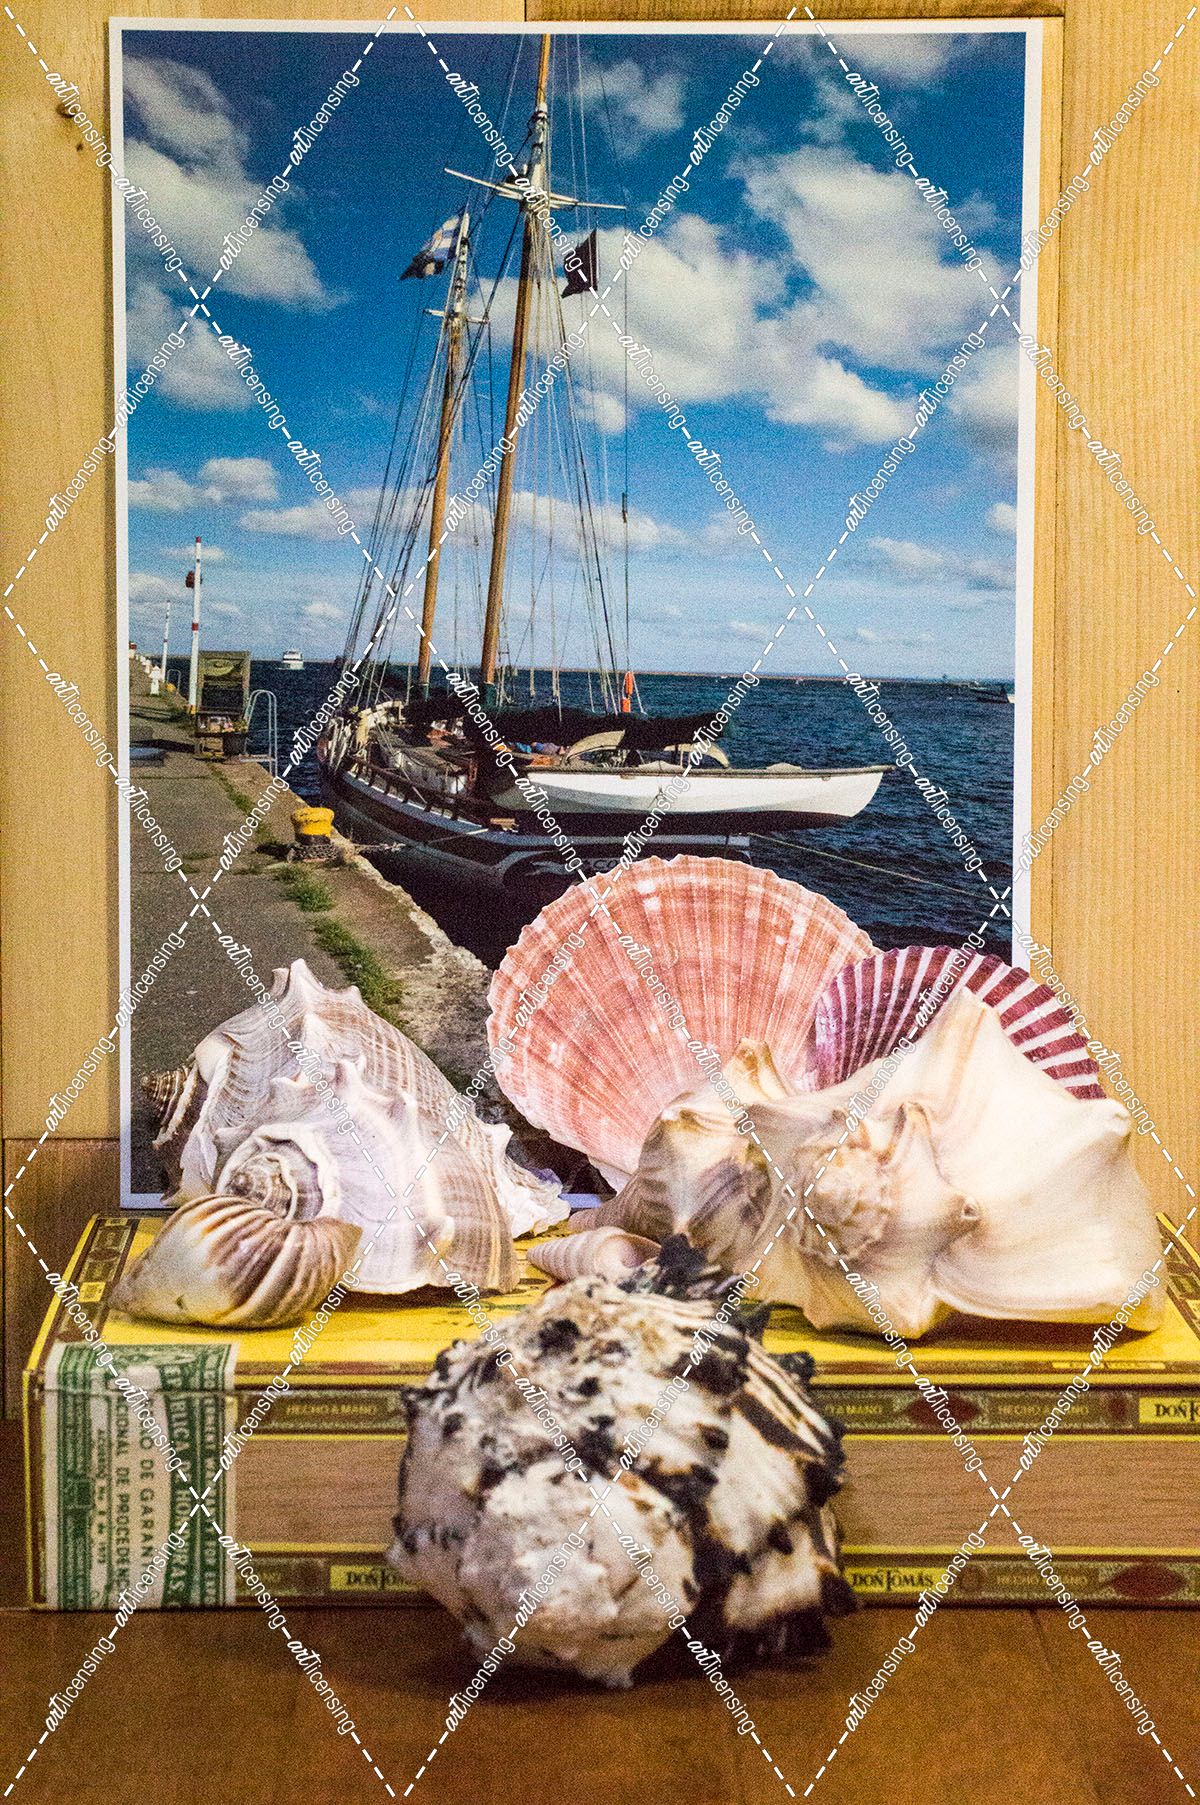 Sailboat shell collection, cigar box